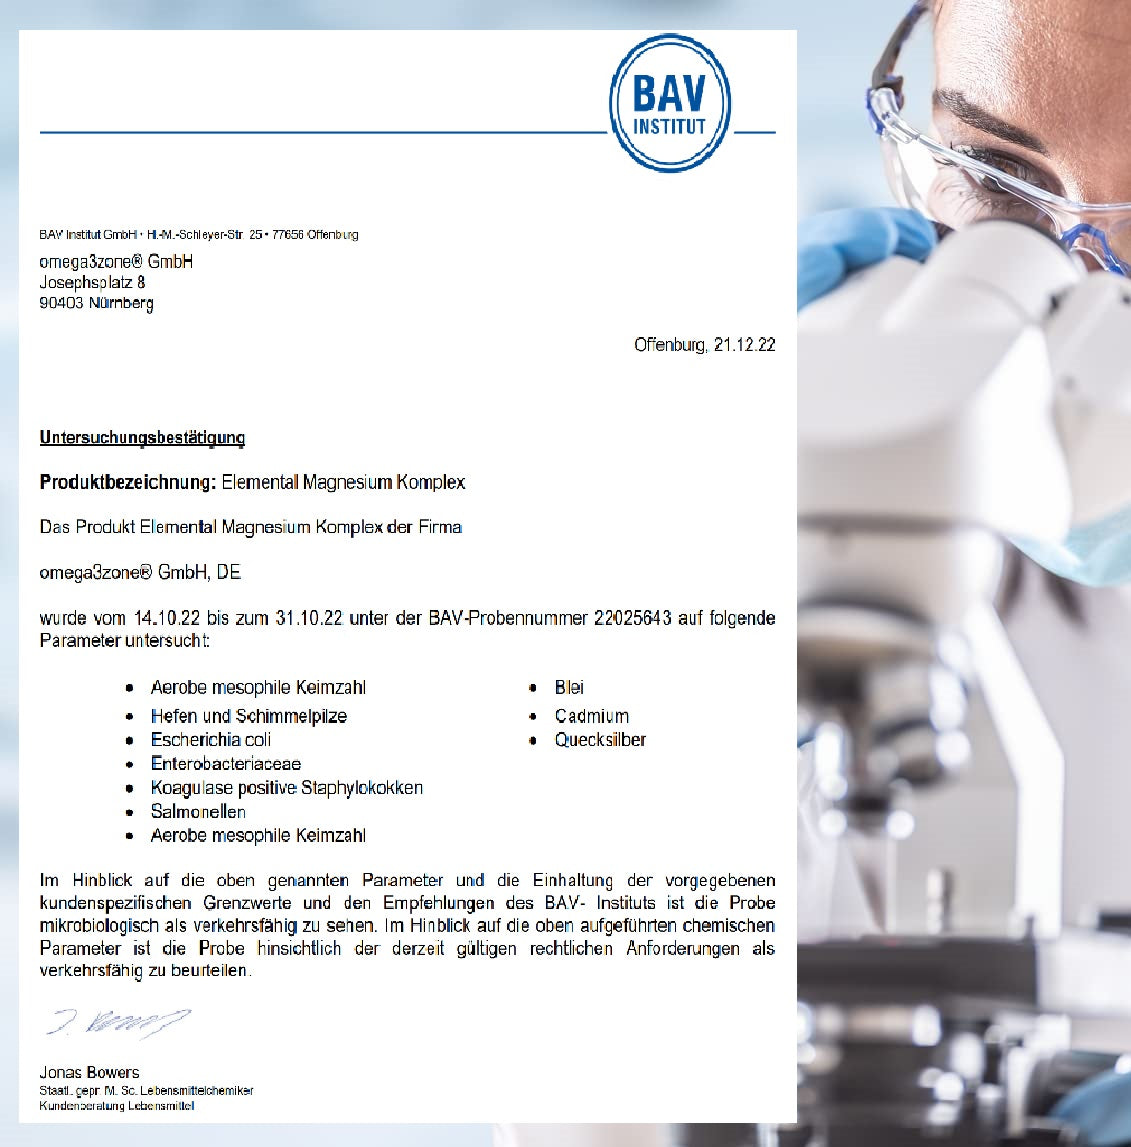 Ein Dokument, das einen Mann in einem Labor mit einem Mikroskop zeigt, der an Magnesium Komplex aus Bisglycinat-, Taurat- und Malat-Kapseln der omega3zone GmbH forscht.